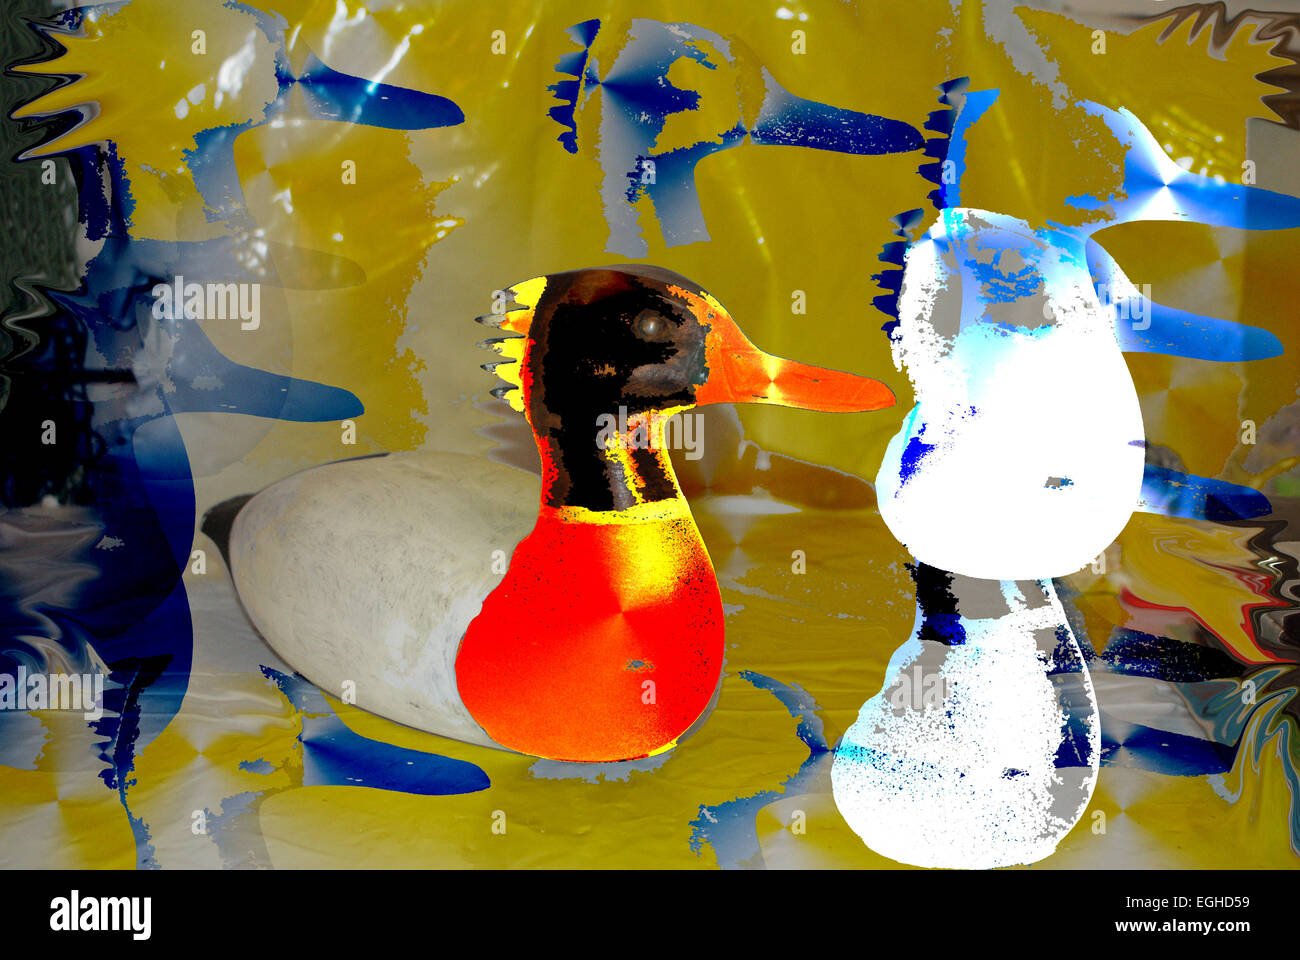 Resumen de imágenes en color de cerca de pato pato diurno grupo destacados Photoshopped horizontal studio shot closeup imagen en color amarillo d Foto de stock